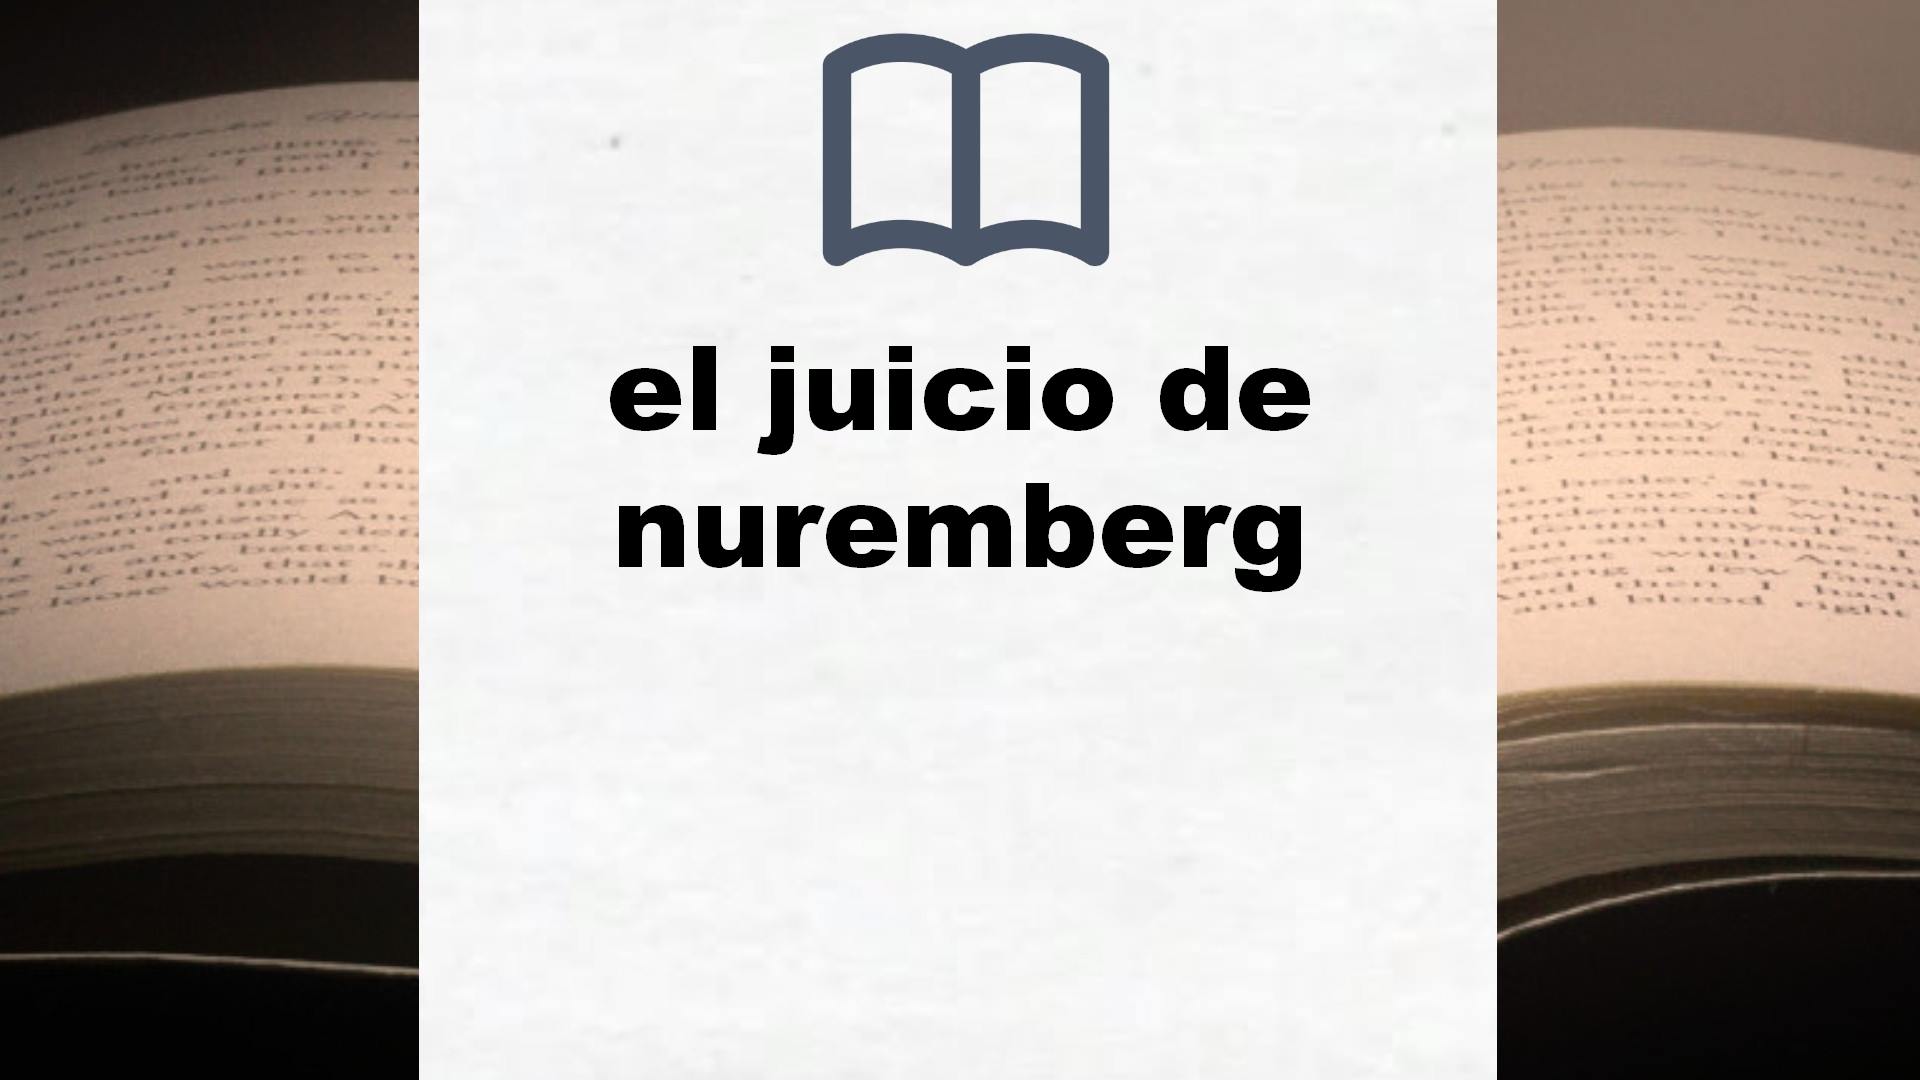 Libros sobre el juicio de nuremberg